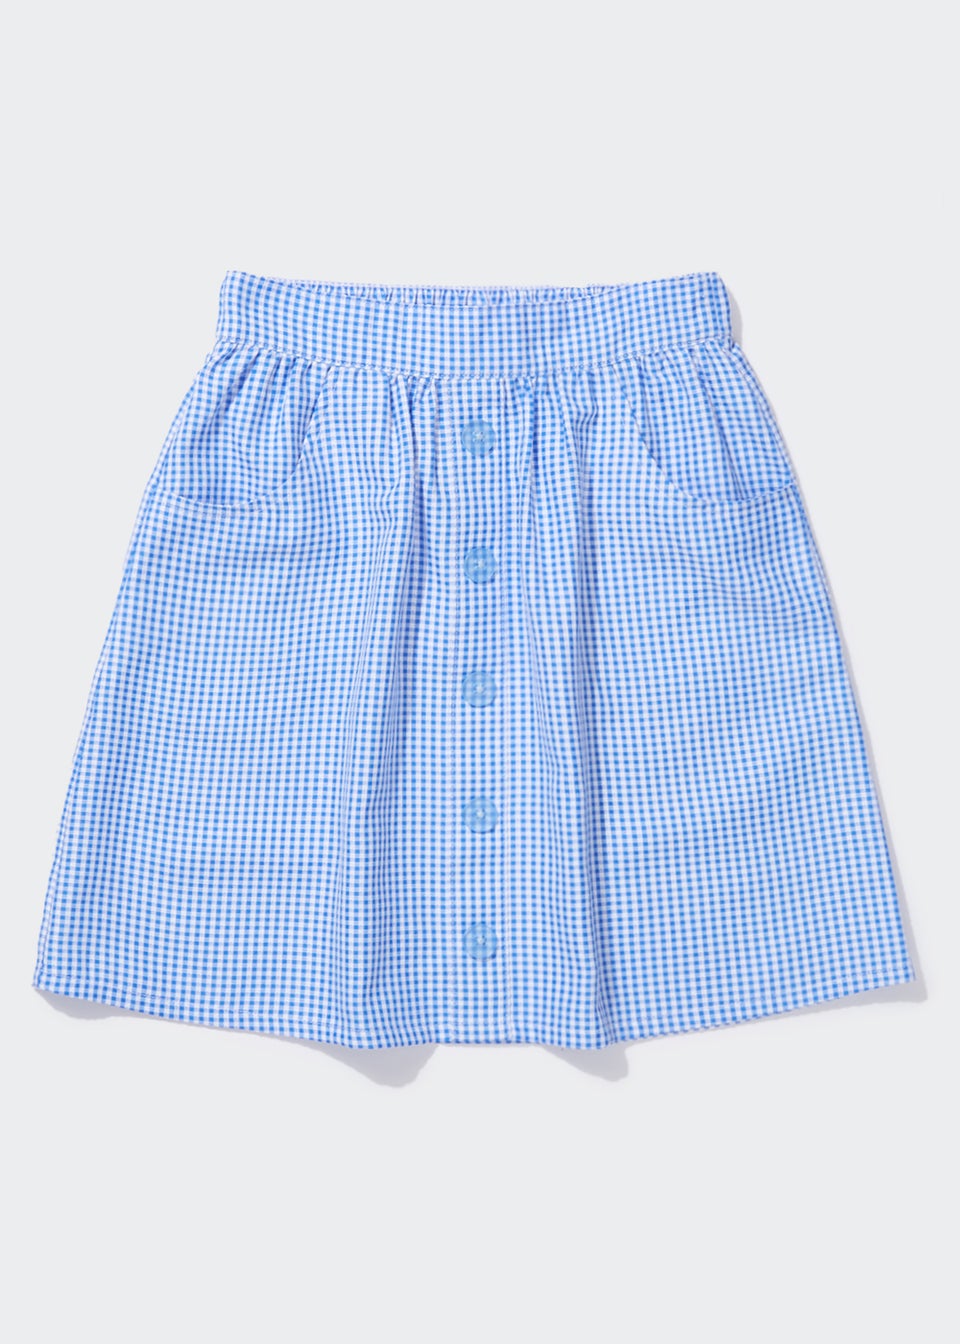 Girls Blue Gingham Button Front School Skirt (4-13yrs)